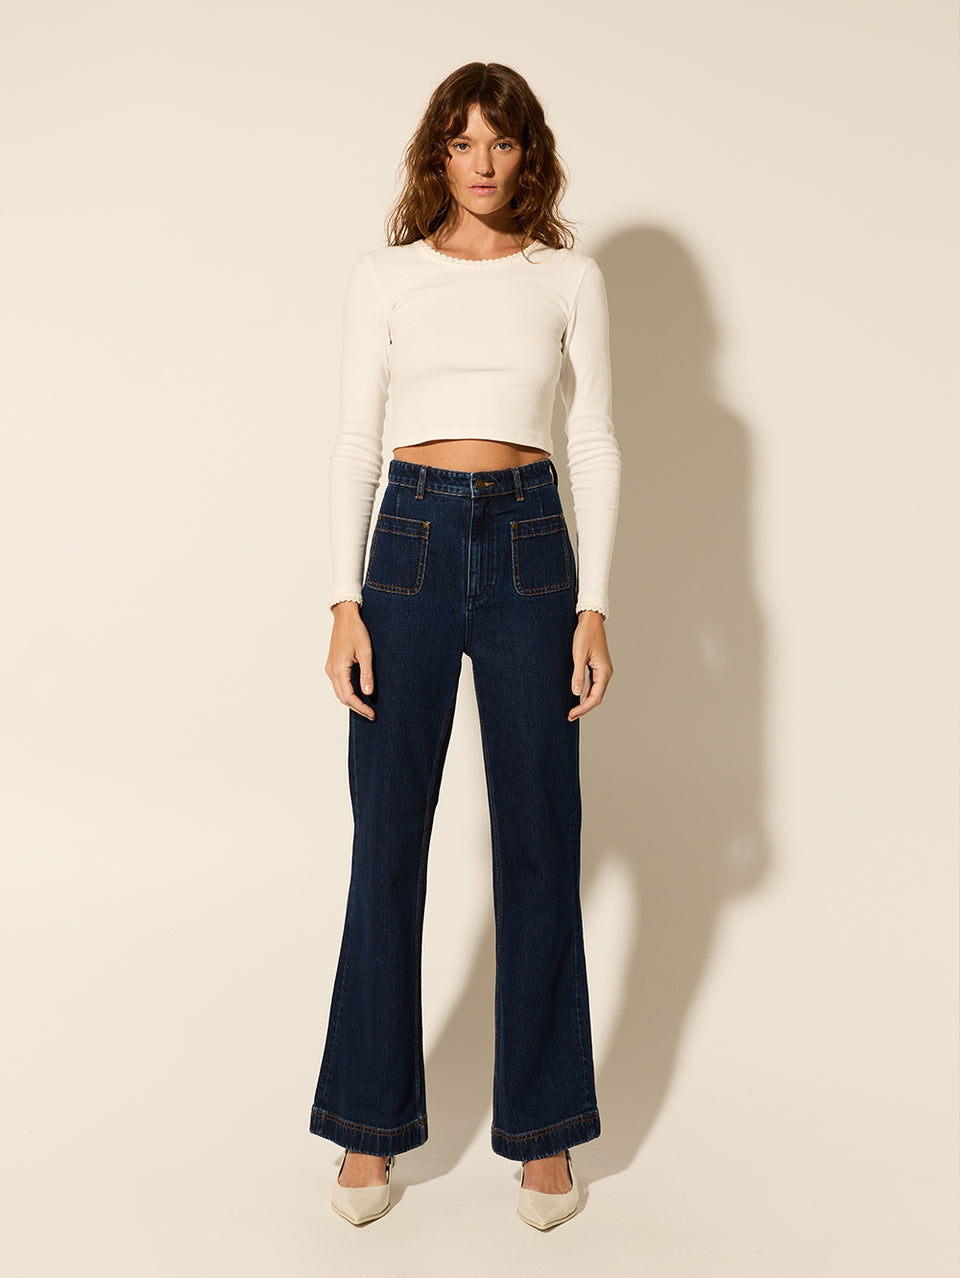 Dominique Jean KIVARI | Model wears denim jean